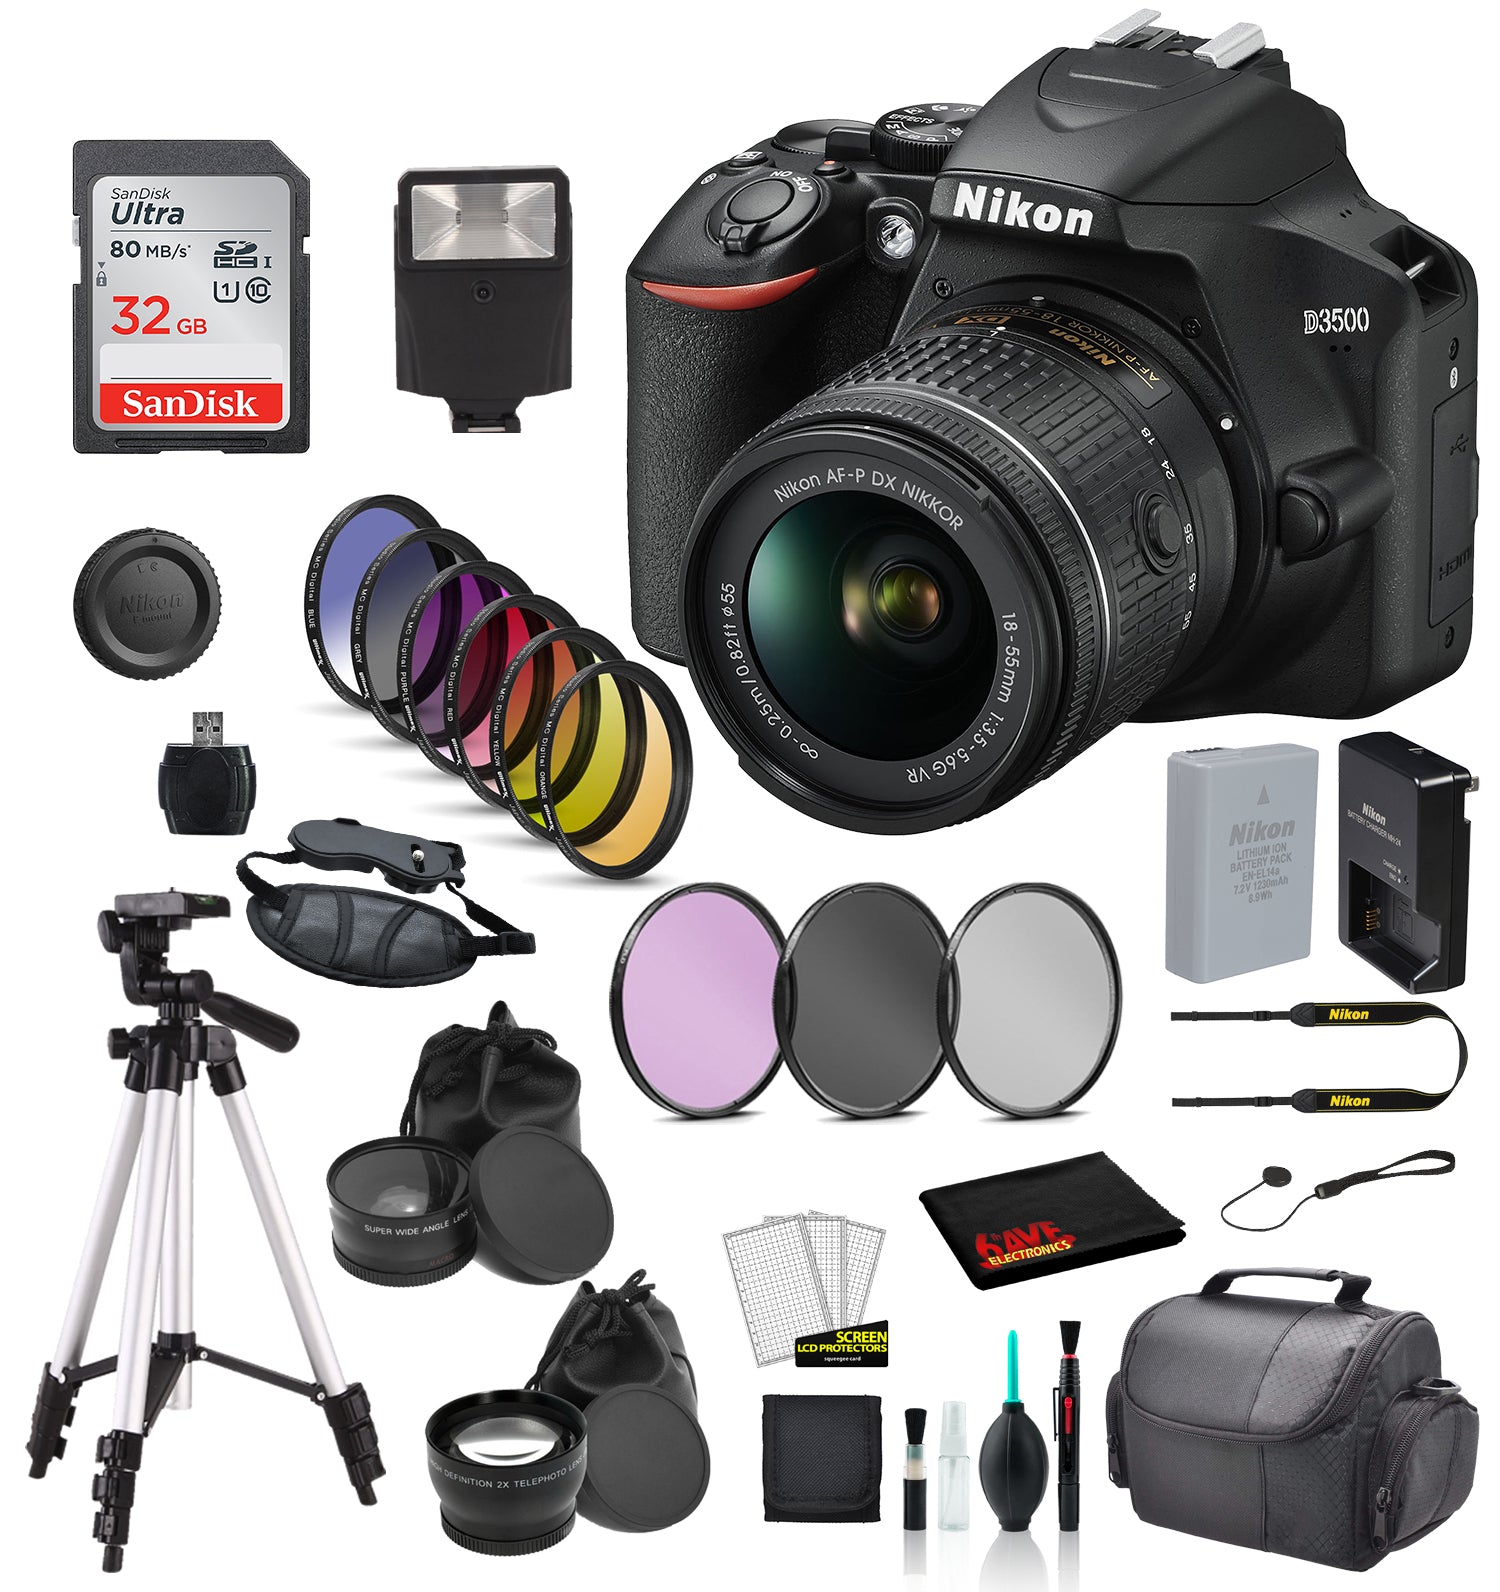 Nikon D3500 DSLR Camera with AF-P 18-55mm VR Lens Bundle SanDisk 32GB SD Card + 9PC Filter + MORE - International